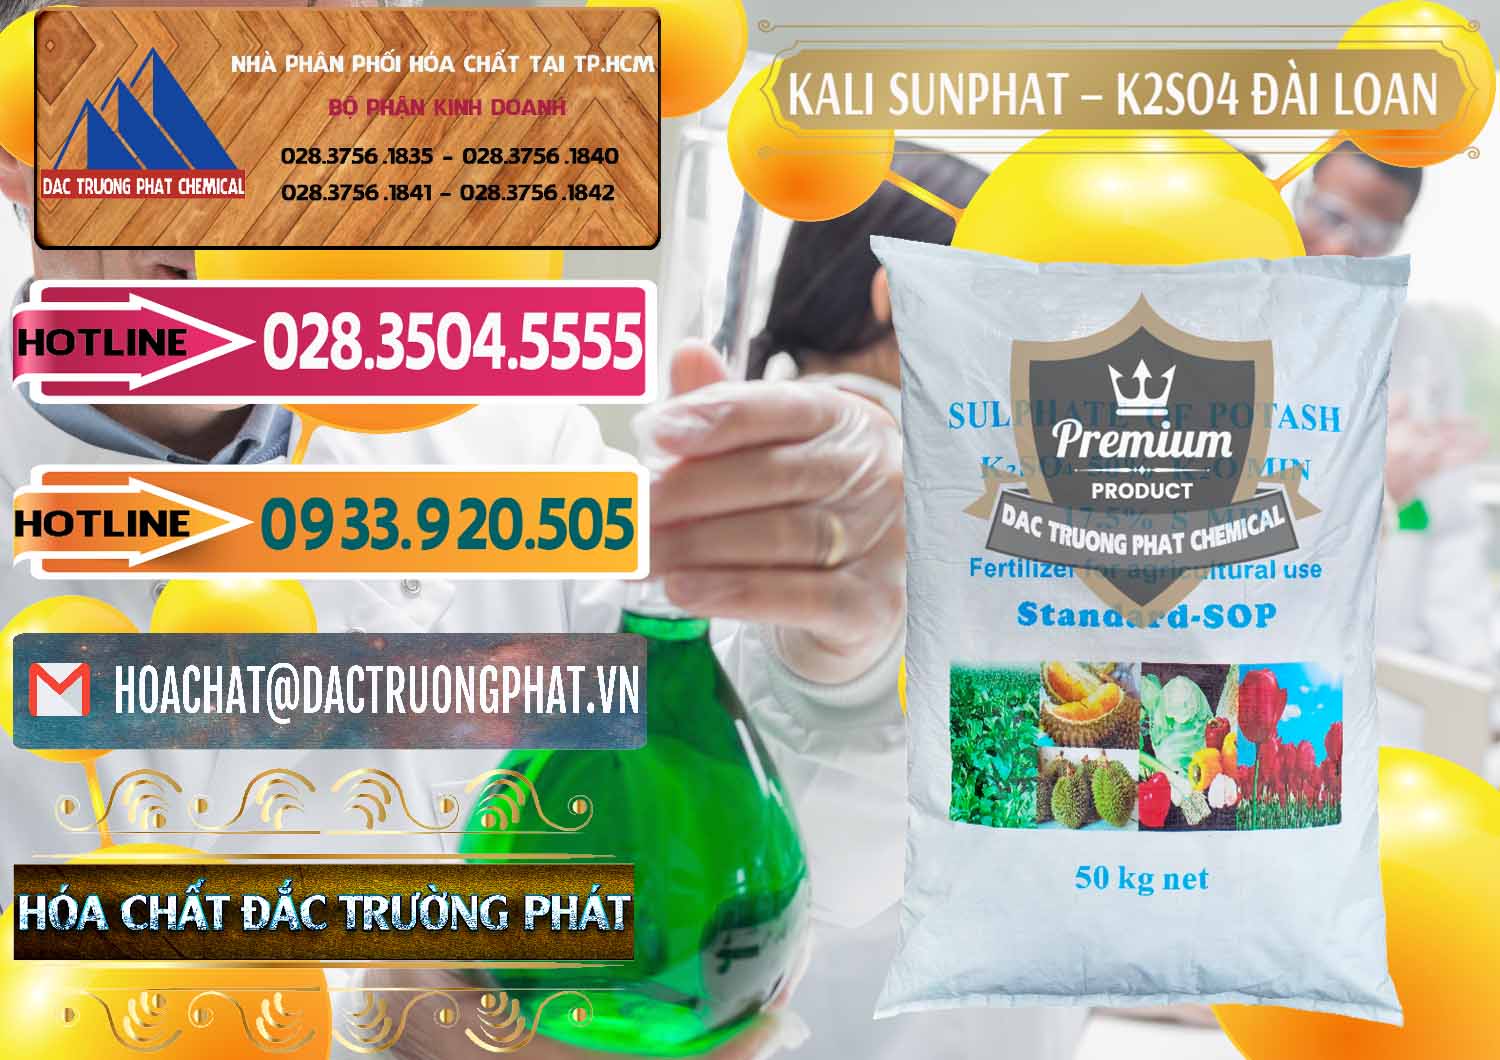 Cung cấp _ bán Kali Sunphat – K2SO4 Đài Loan Taiwan - 0084 - Cty kinh doanh - cung cấp hóa chất tại TP.HCM - dactruongphat.vn